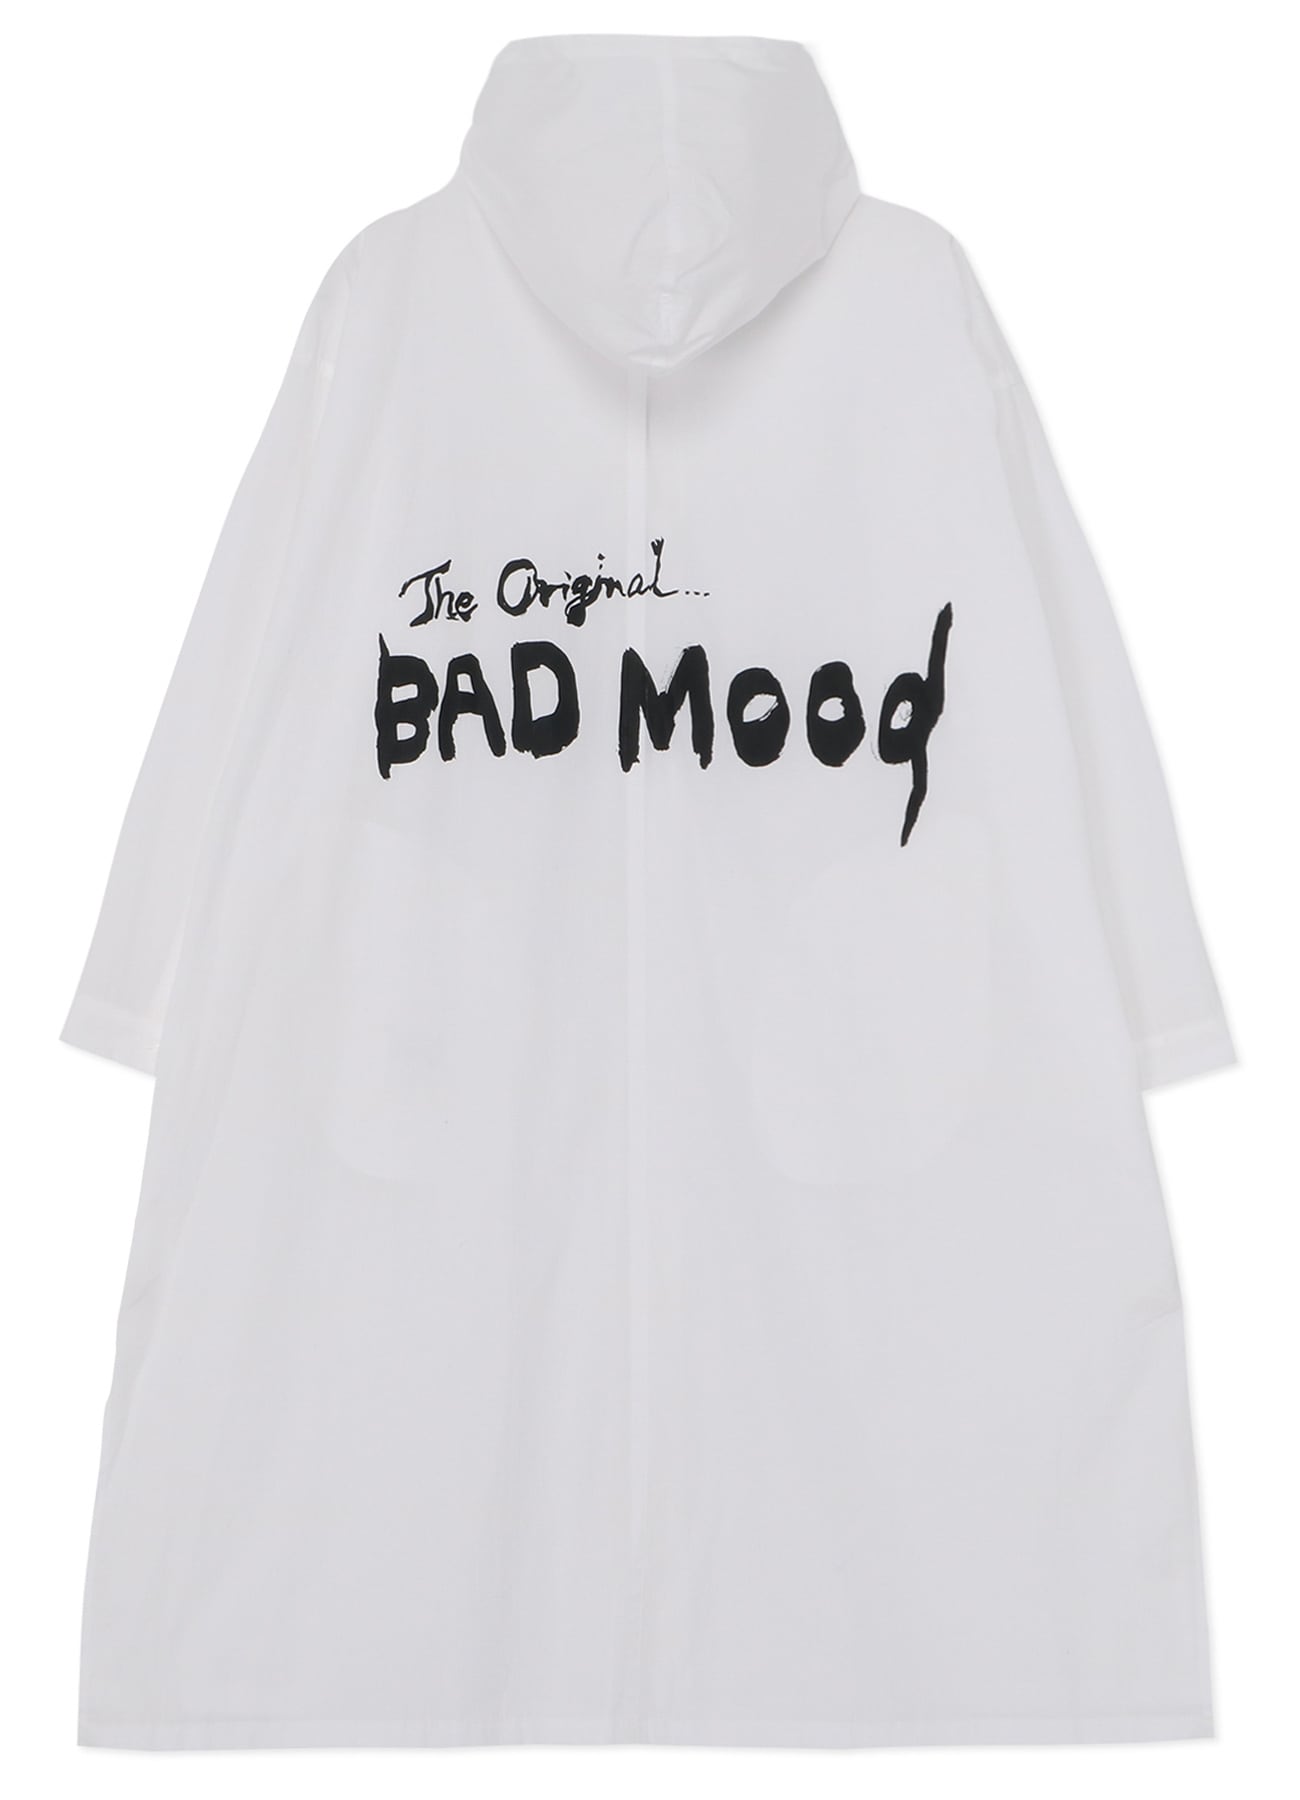 "THE ORIGINAL BAD MOOD" PRINTED COAT